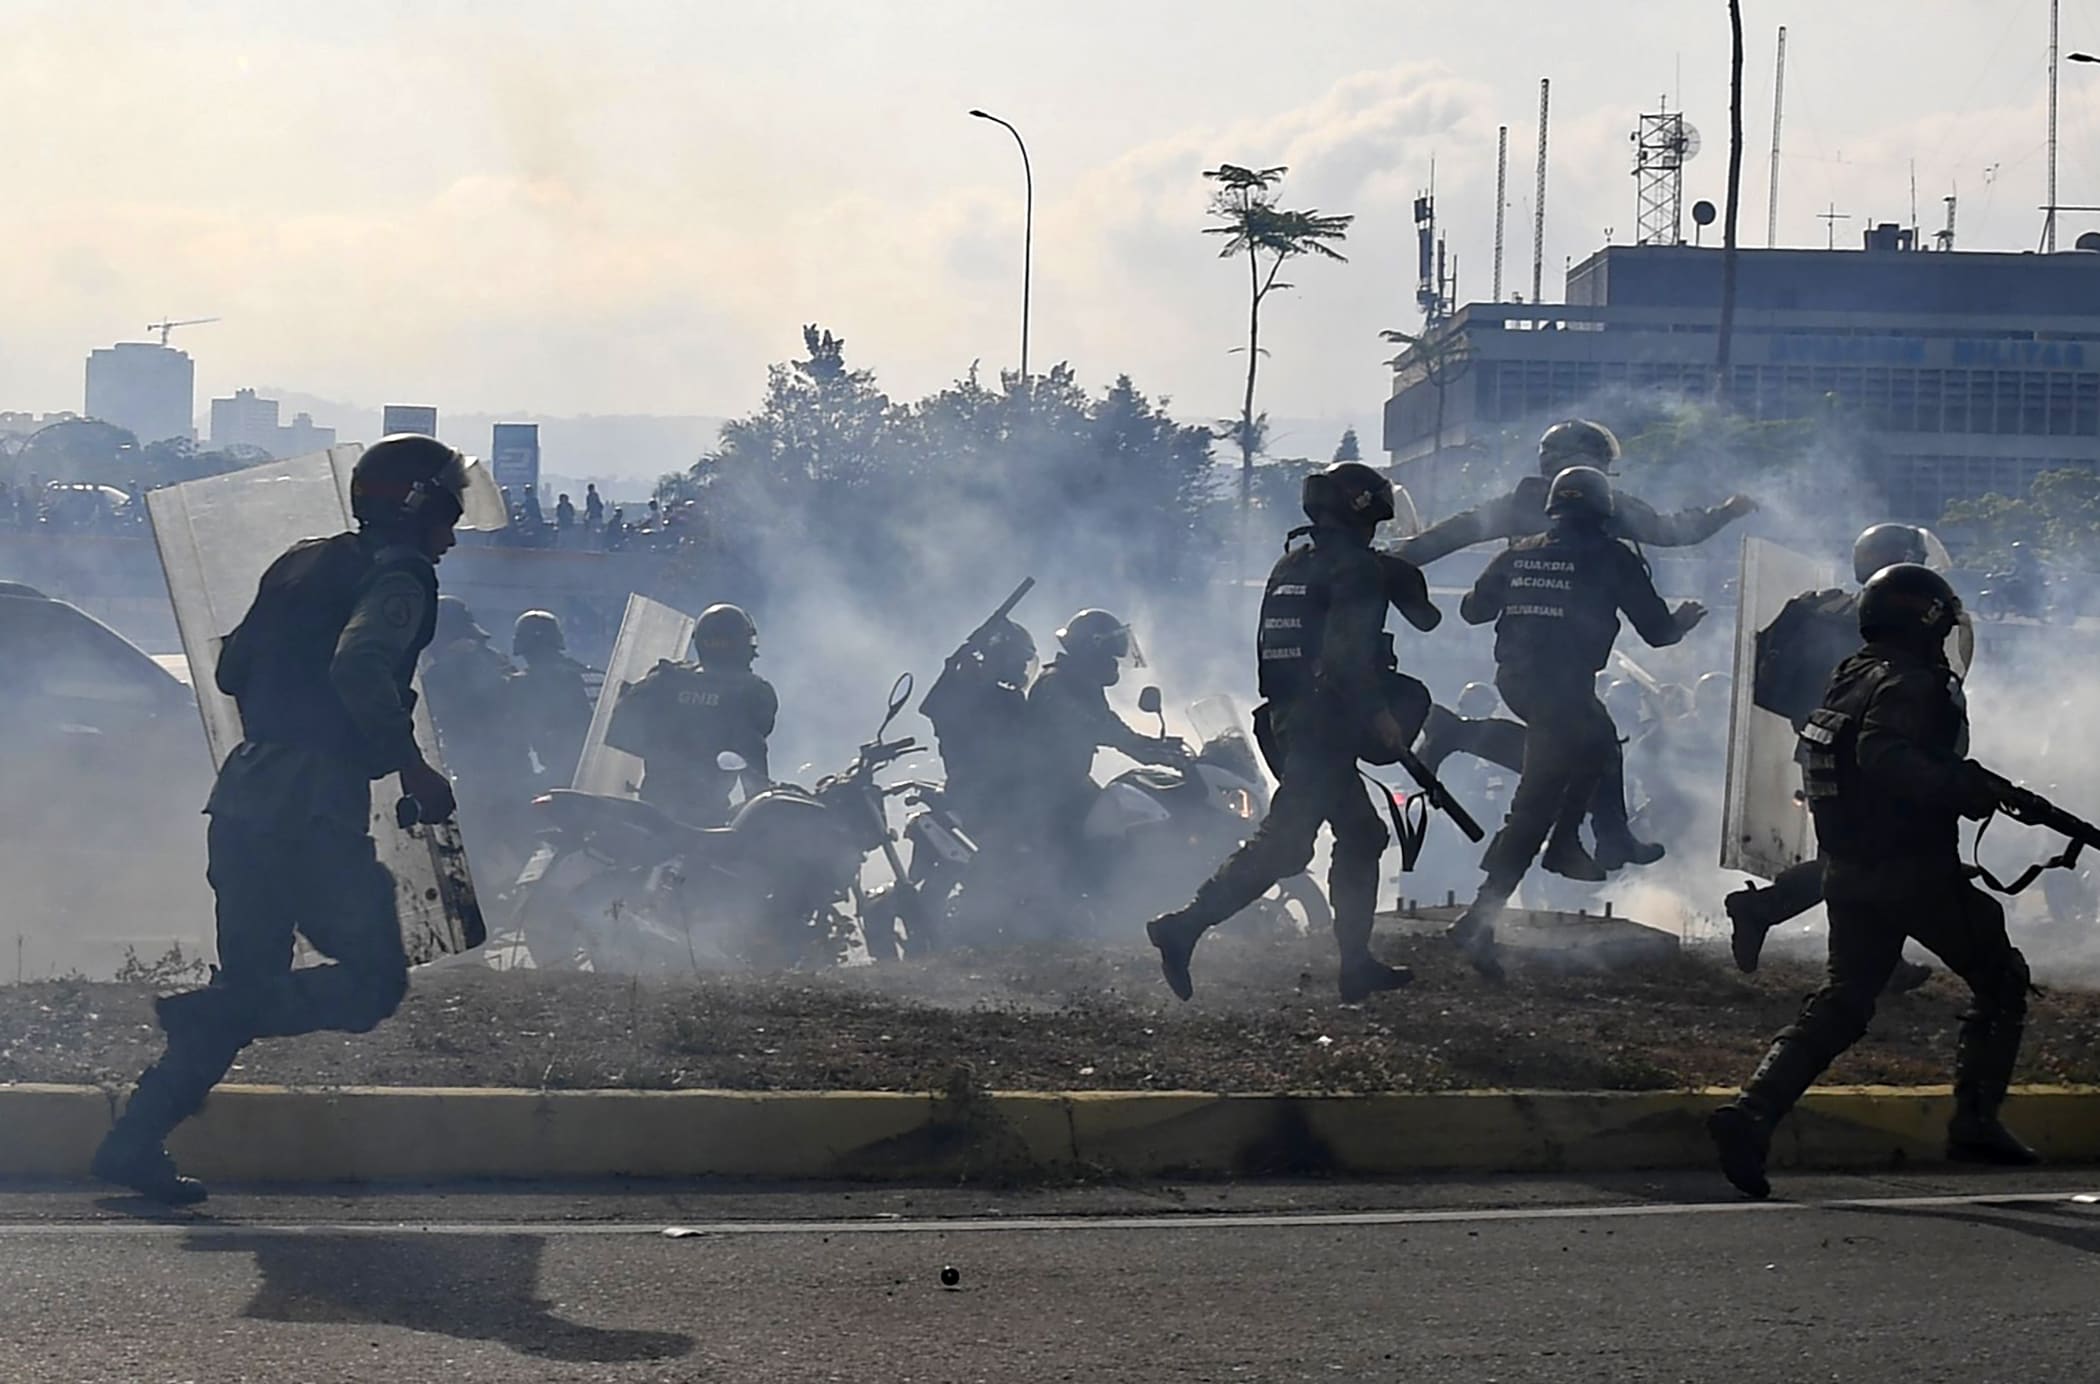 70 gewonden in Venezuela na oproep oppositieleider Guaidó om president Maduro af te zetten